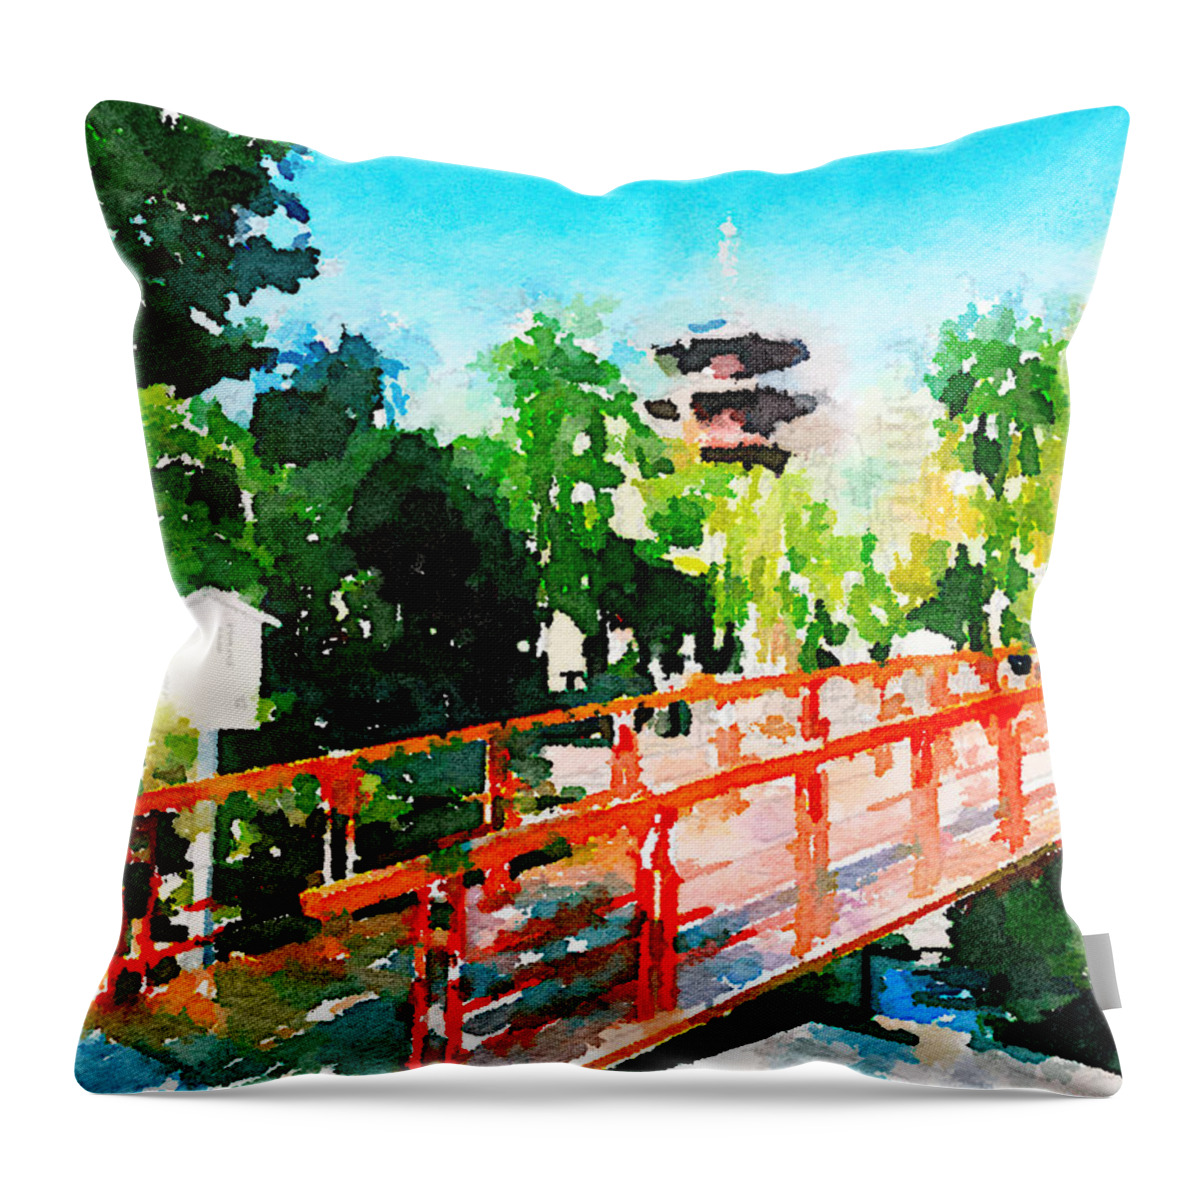 Kawasaki Daishi Throw Pillow featuring the painting Kawasaki Daishi Bridge and Five-Storied Pagoda by Beverly Claire Kaiya